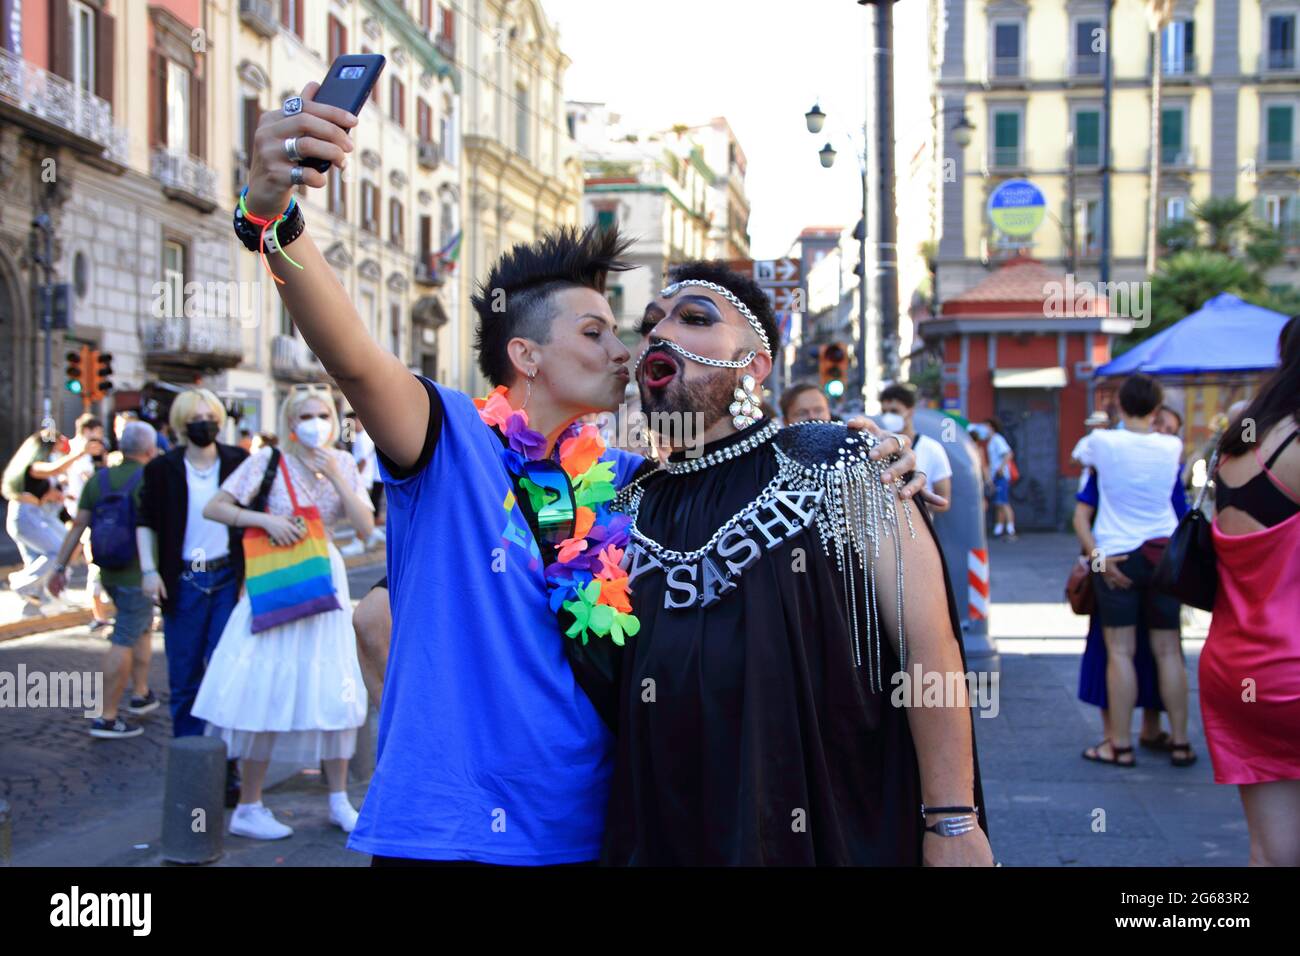 Napoli, Italia - 03 luglio 2021 :'JESCE Sole' era lo slogan con cui il 29 giugno 1996 veniva evocato il primo primo primo nazionale di Napoli, la prima manifestazione di orgoglio LGBT nel sud Italia. Per questo, - nel piano rispetto di quelle che saranno le vigenti normative in materia di salute e sicurezza - sabato 3 luglio 2021 le associazioni Antinoo Arcigay Napoli, ALFI le Maree e Associazione Trans Napoli si sono incontrate in Piazza Dante per il Napoli Pride, Vendicinque anni dopo quel primo storico Pride del '96. @JESCE, JESCE sole, ancora una volta per riporto il sereno e la gioia. (Pho Foto Stock